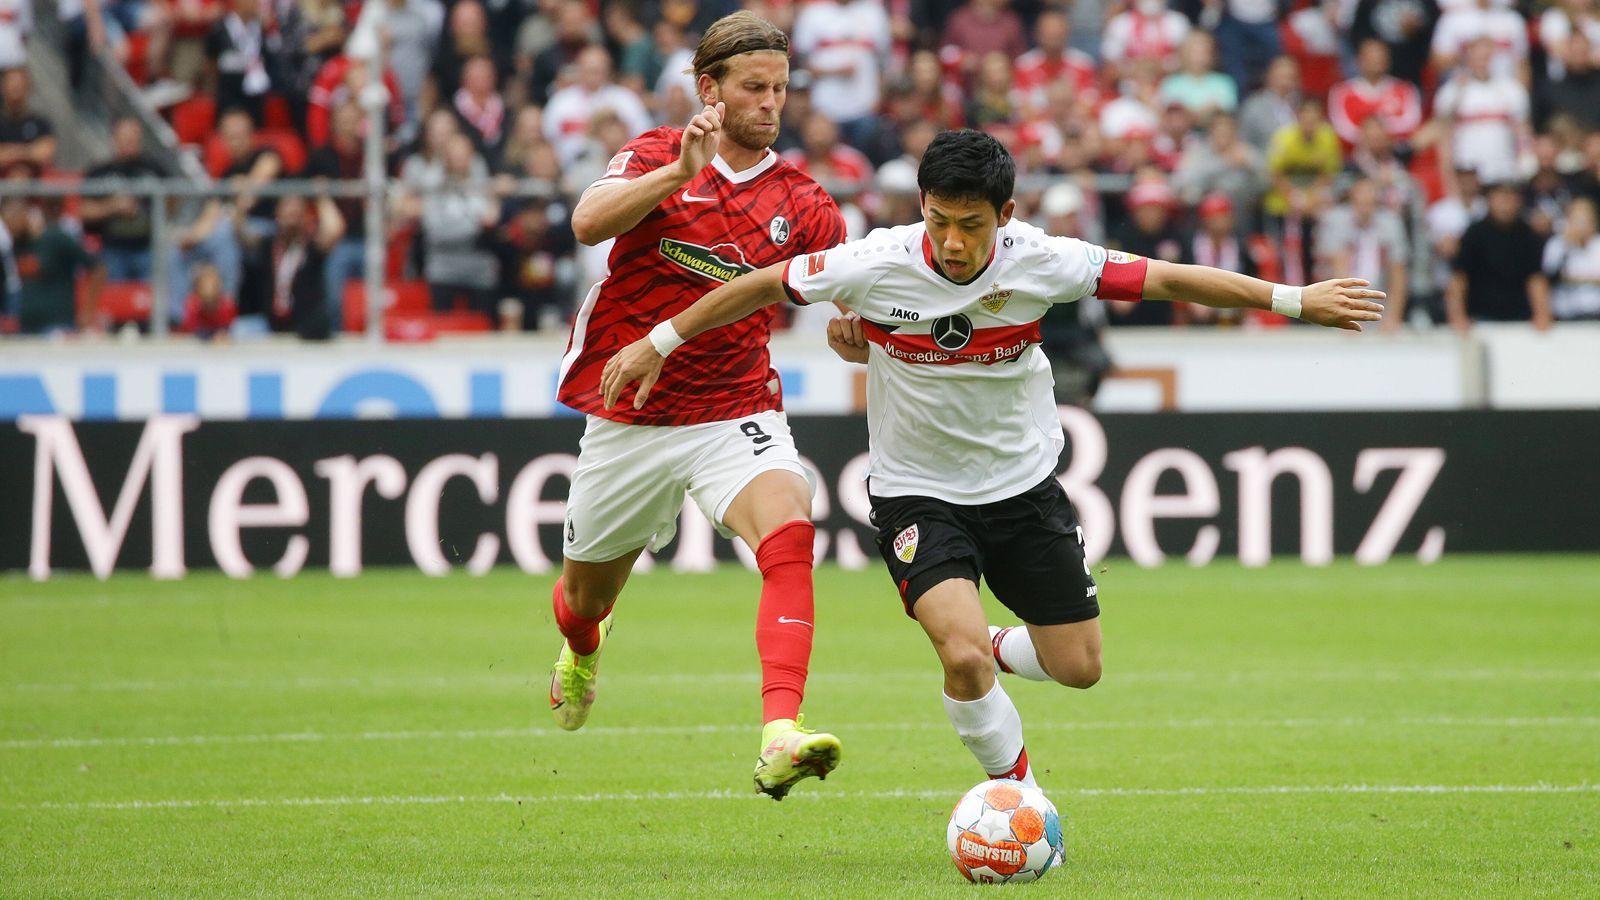 
                <strong>3. Spieltag: VfB Stuttgart - SC Freiburg</strong><br>
                Zum Süd-West-Duell kommt es bereits am 3. Spieltag. Die Freiburger Europa-League-Teilnehmer dürften sich auf die Partie freuen, schließlich sind sie seit über vier Jahren in der Bundesliga gegen die Schwaben ungeschlagen. Der VfB hingegen hat sich durch den Last-Minute-Treffer von Wataru Endo am letzten Spieltag gegen Köln gerade so in der Liga gehalten und durstet nach einem Sieg gegen die Breisgauer. Sollte es im Hinspiel nicht klappen, gibt es in der Rückrunde am 20. Spieltag in Freiburg die nächste Chance dafür.
              